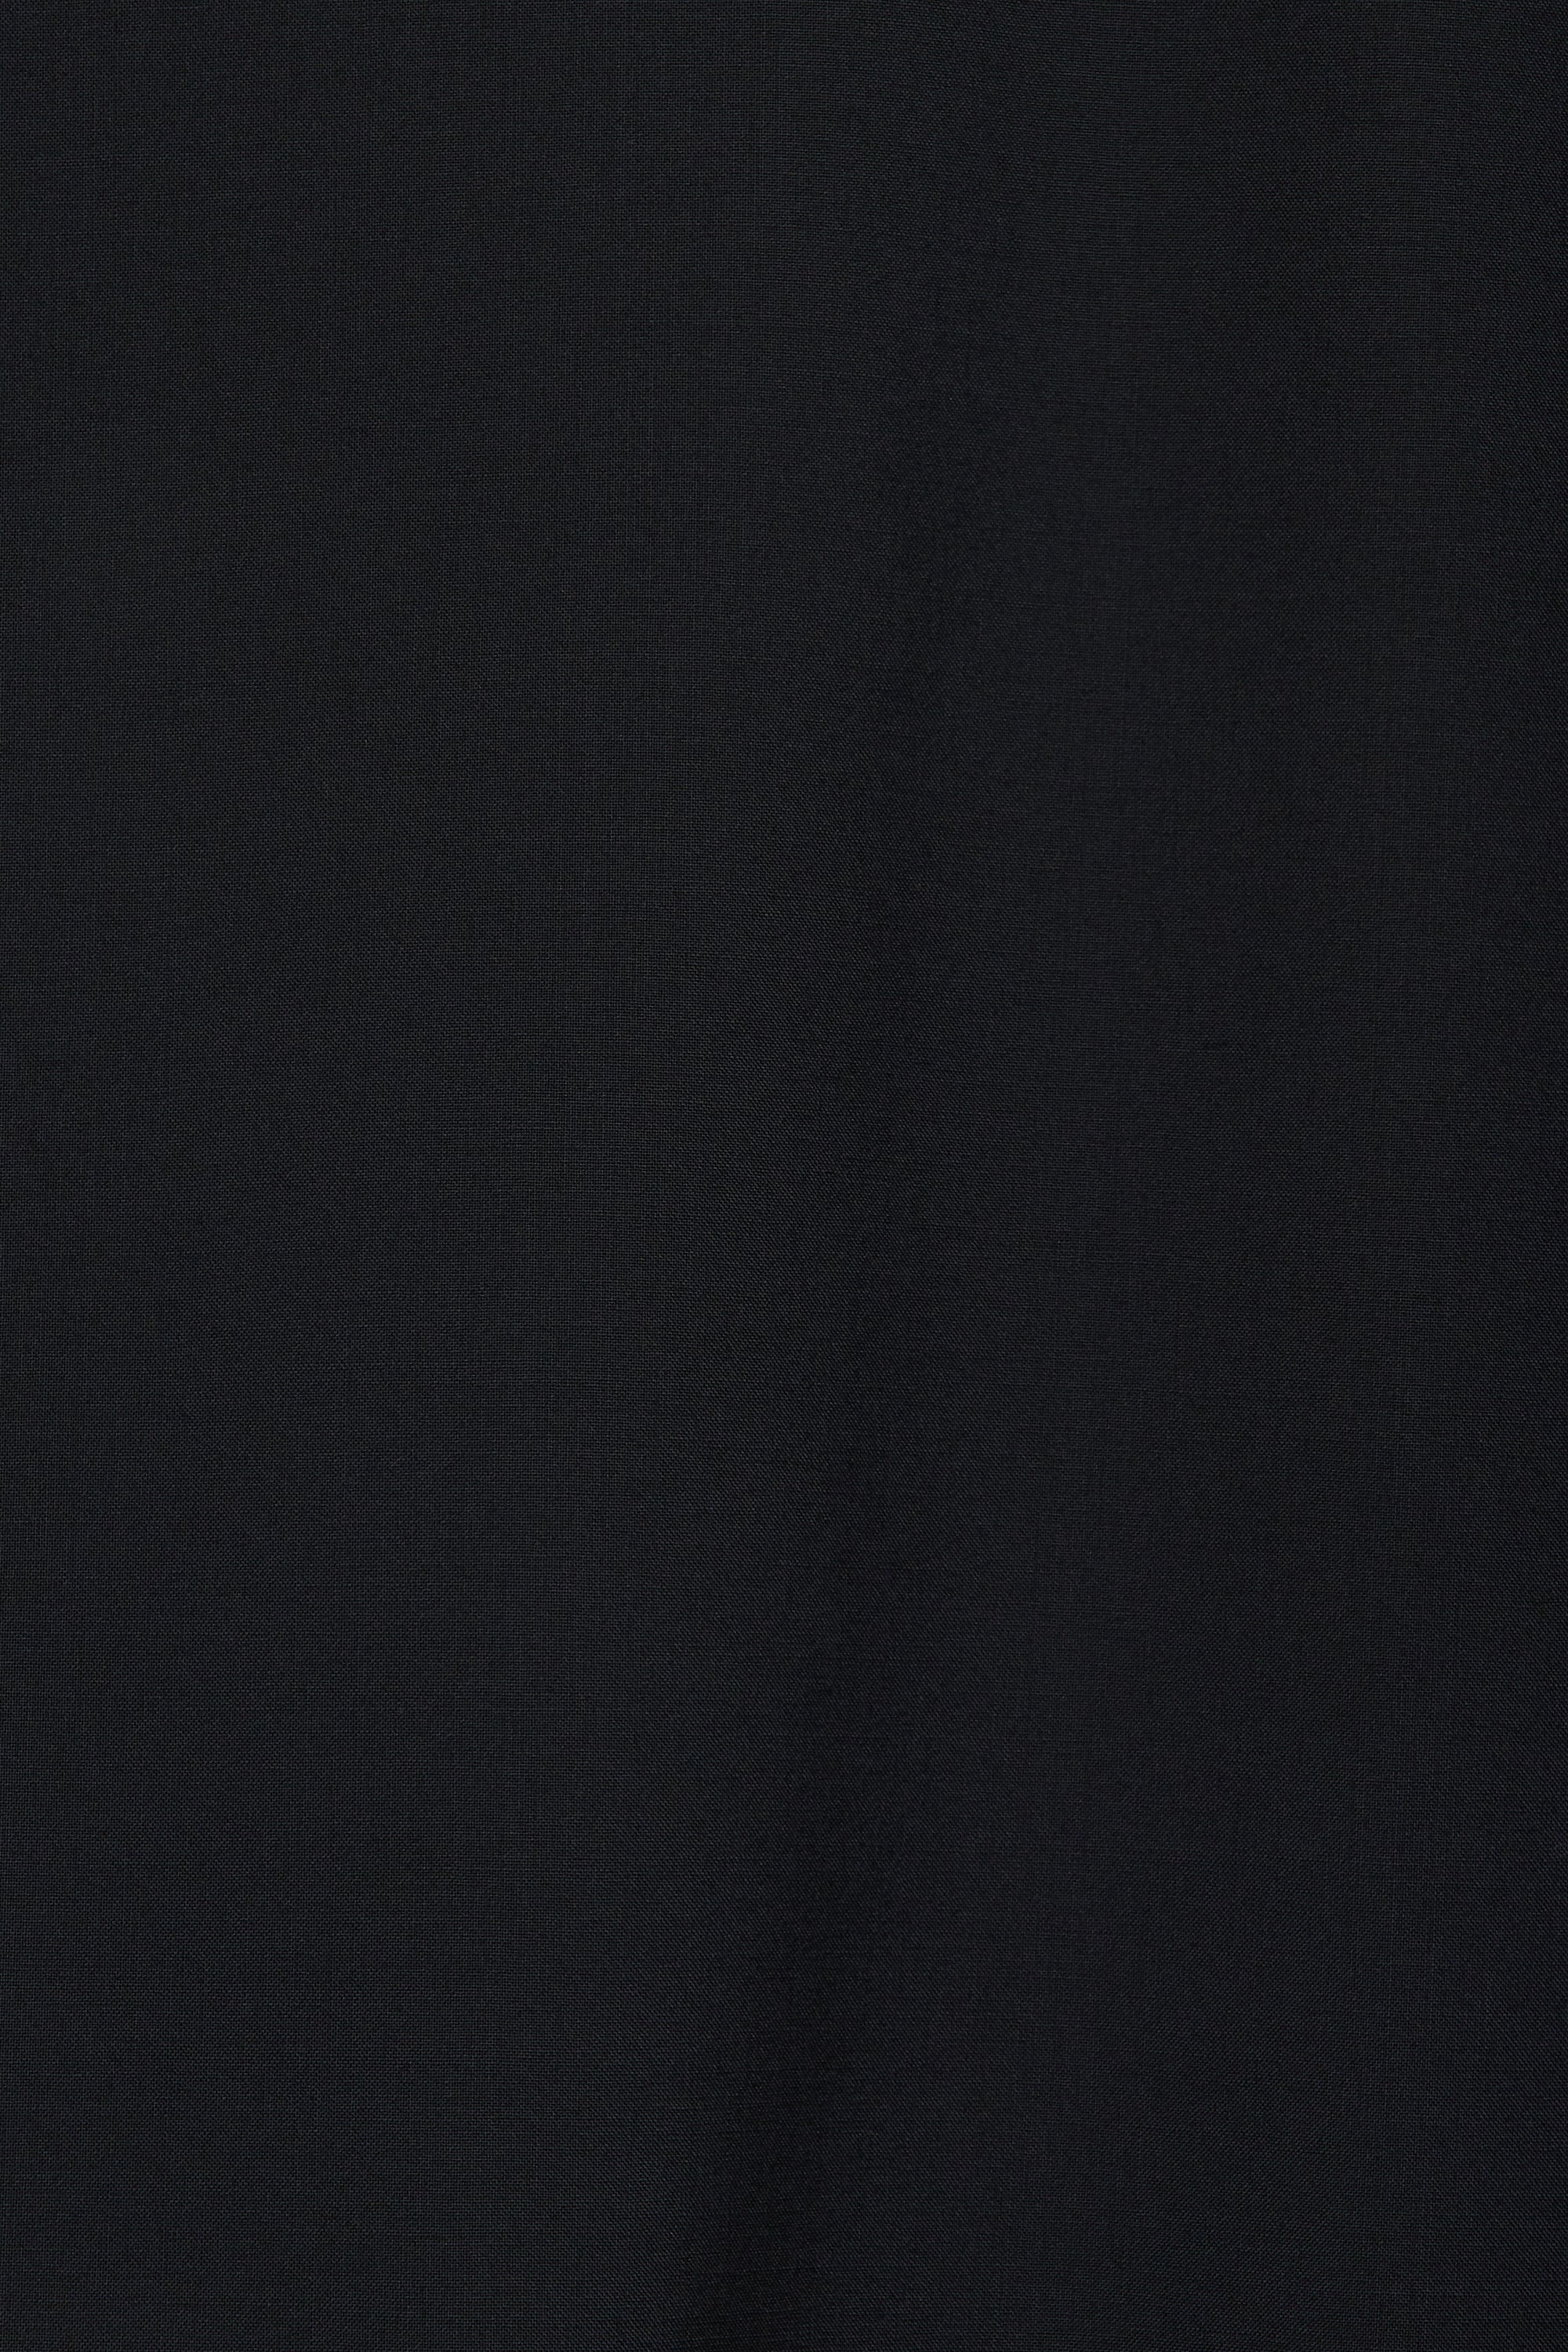 オーガニックウール 2/80 トロピカル / コンフォートフィットシャツ, Black